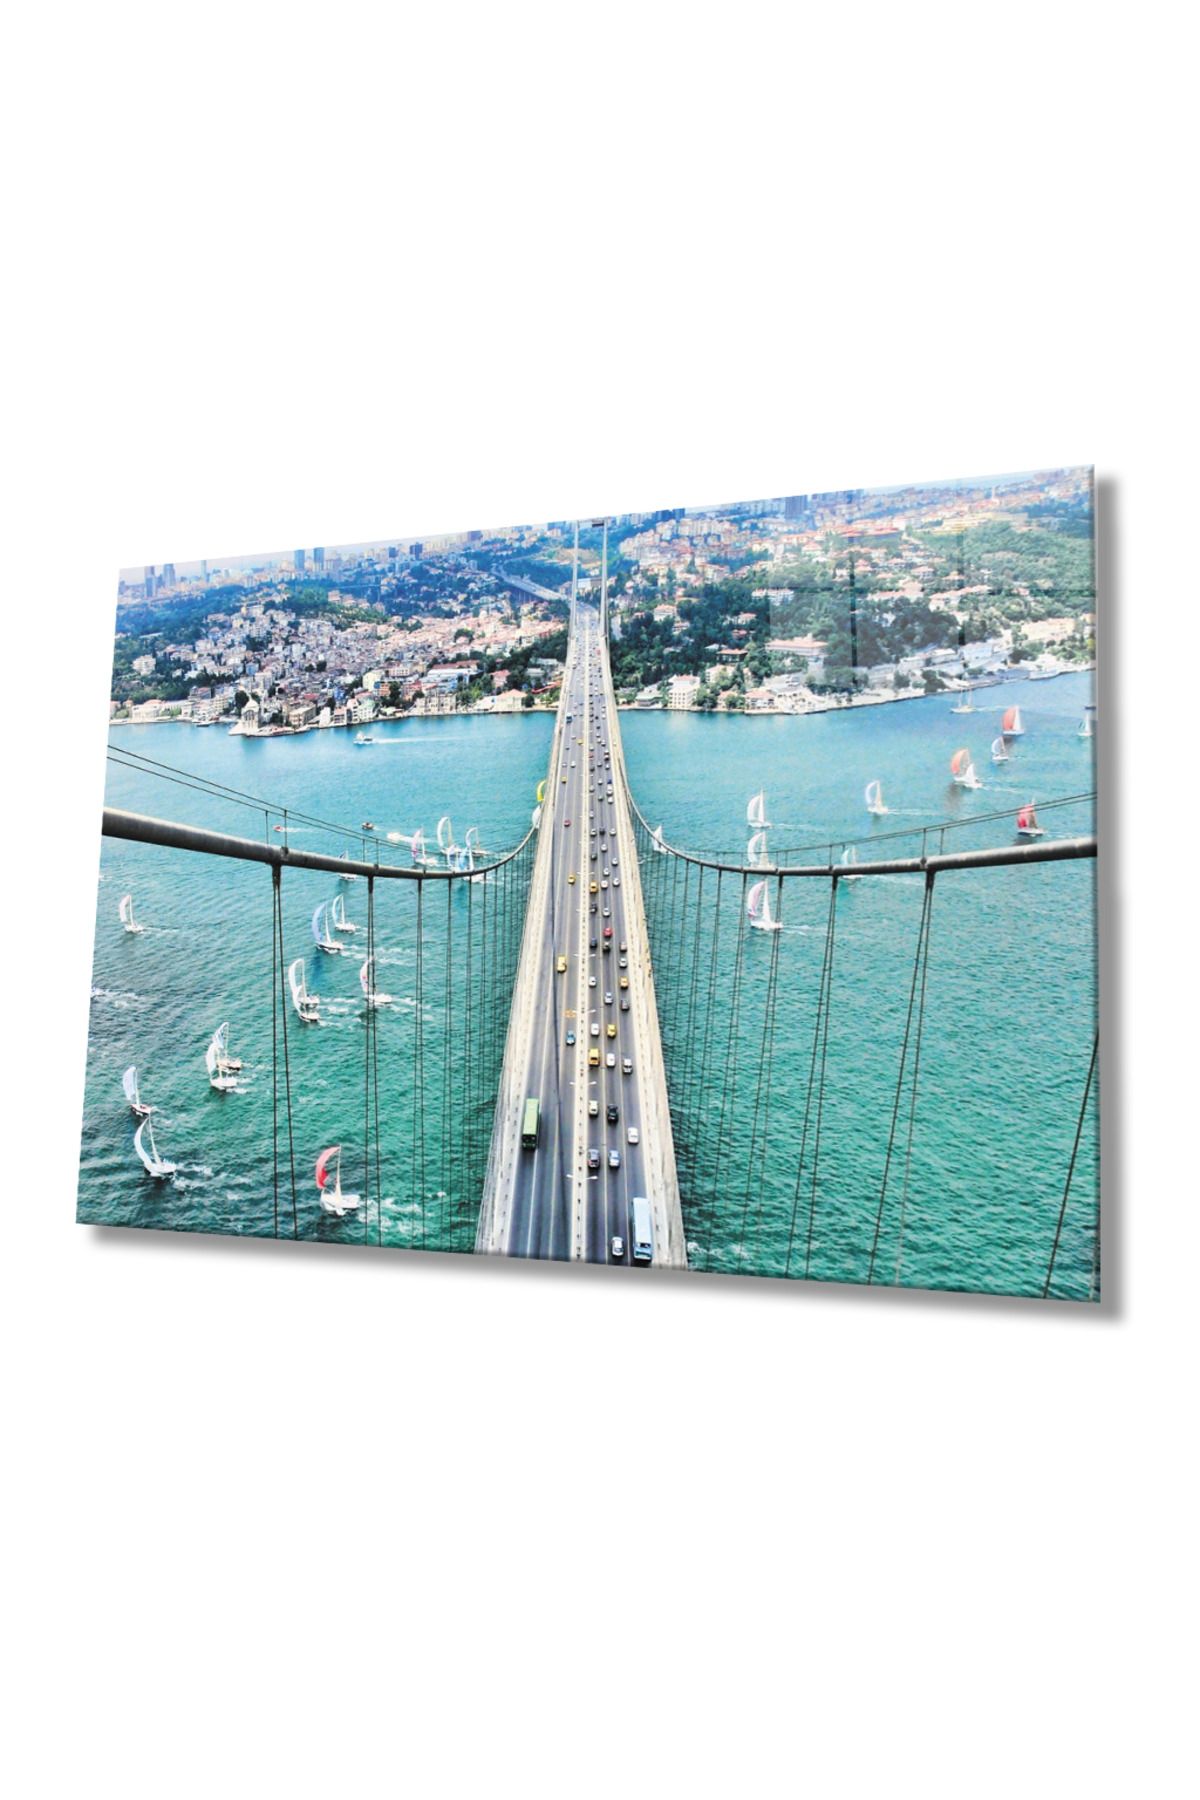 Doğal Bizden DB HG   Boğaz Köprüsü ve yelkenliler Manzaralı İstanbul  Cam Tablo